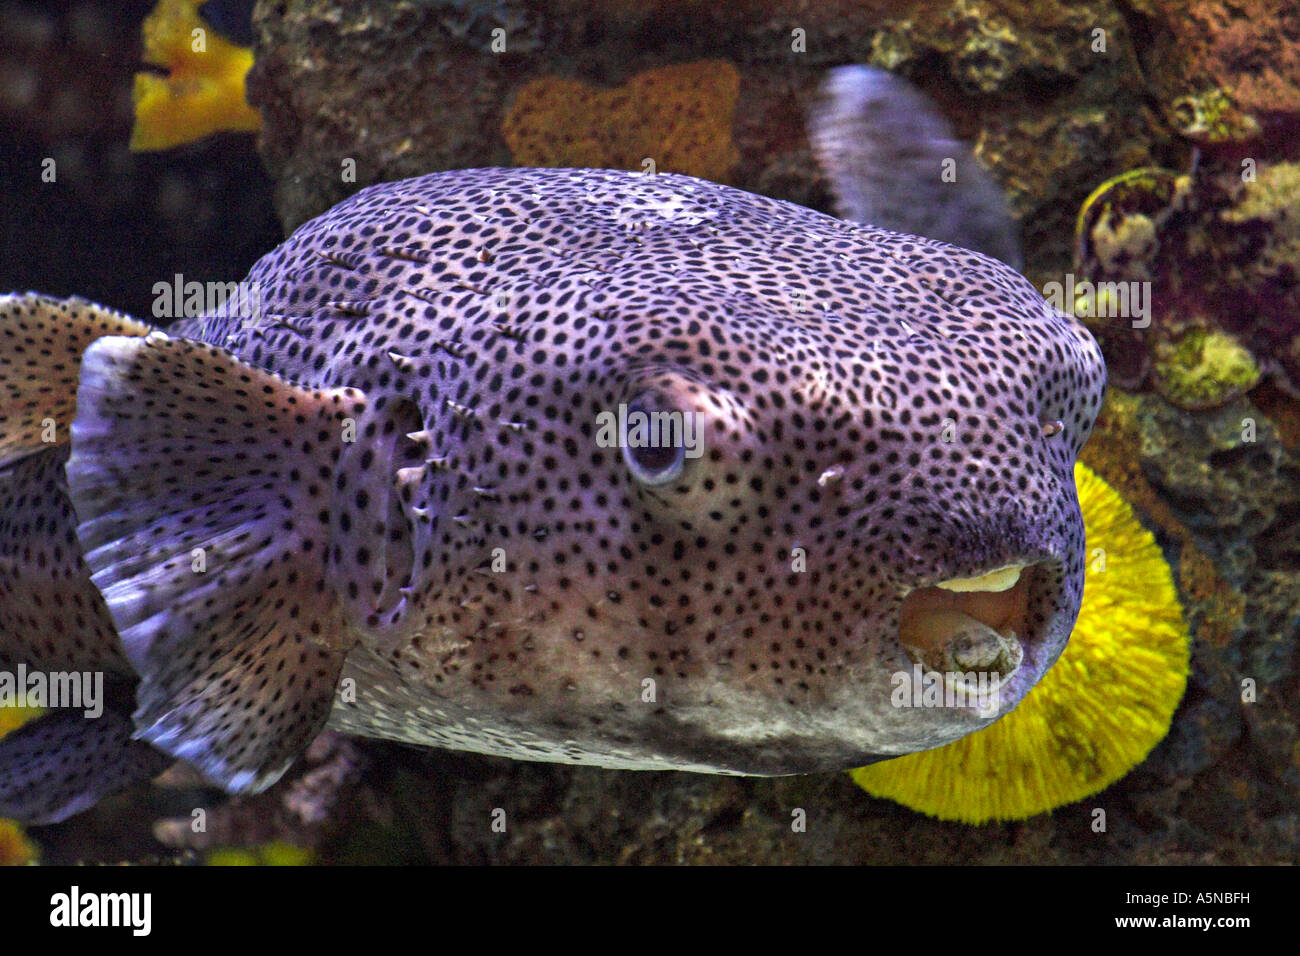 Ballonnement Puffer et ballonné gonflés un grand poisson-globe violet  Tetraodontidae nage par dans un aquarium Las Vegas NEVADA USA Photo Stock -  Alamy